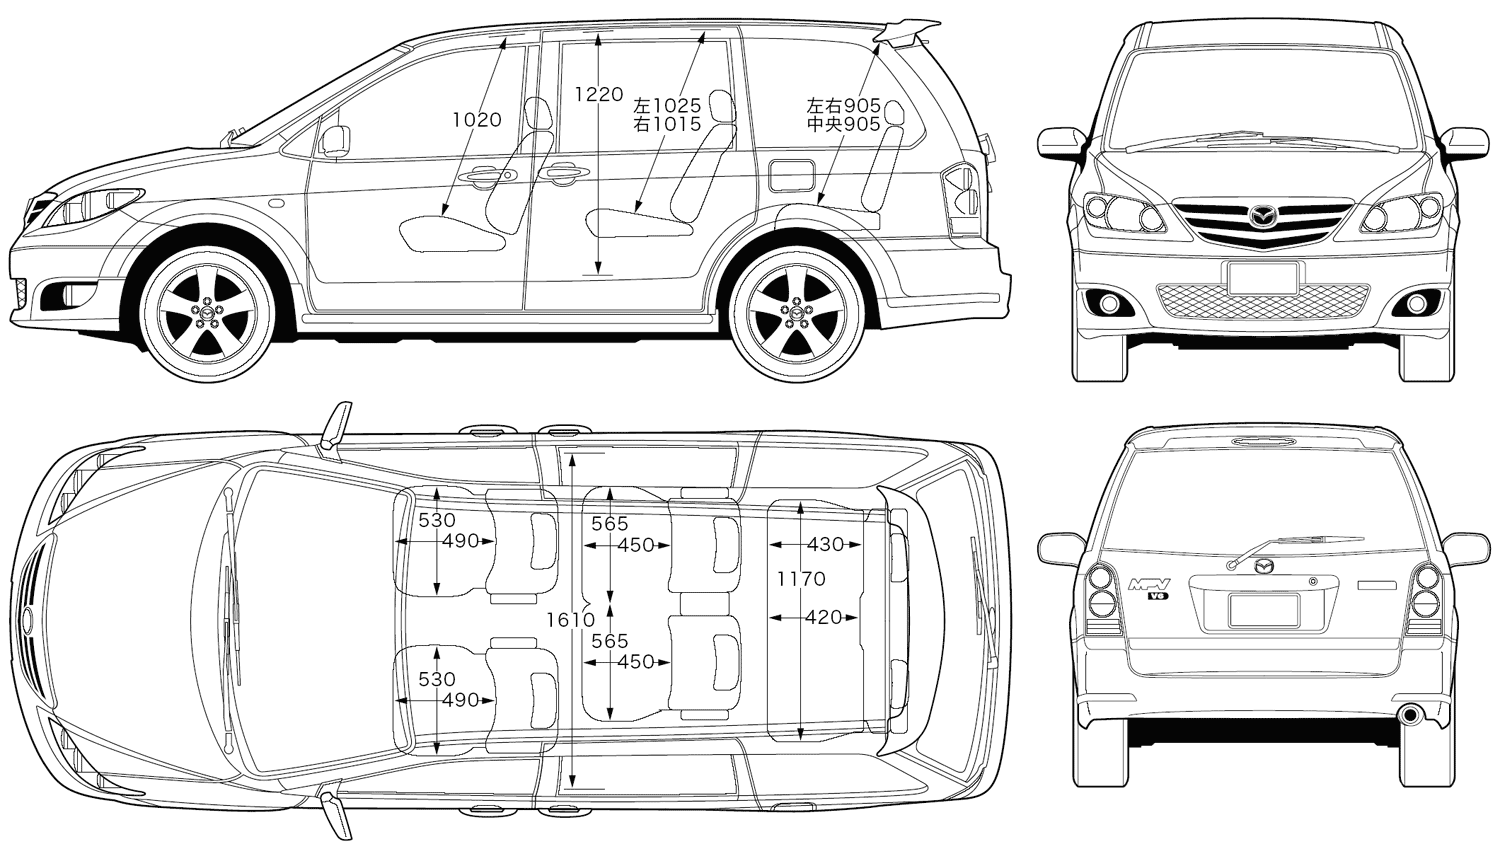 2006 Mazda MPV - Overview - CarGurus